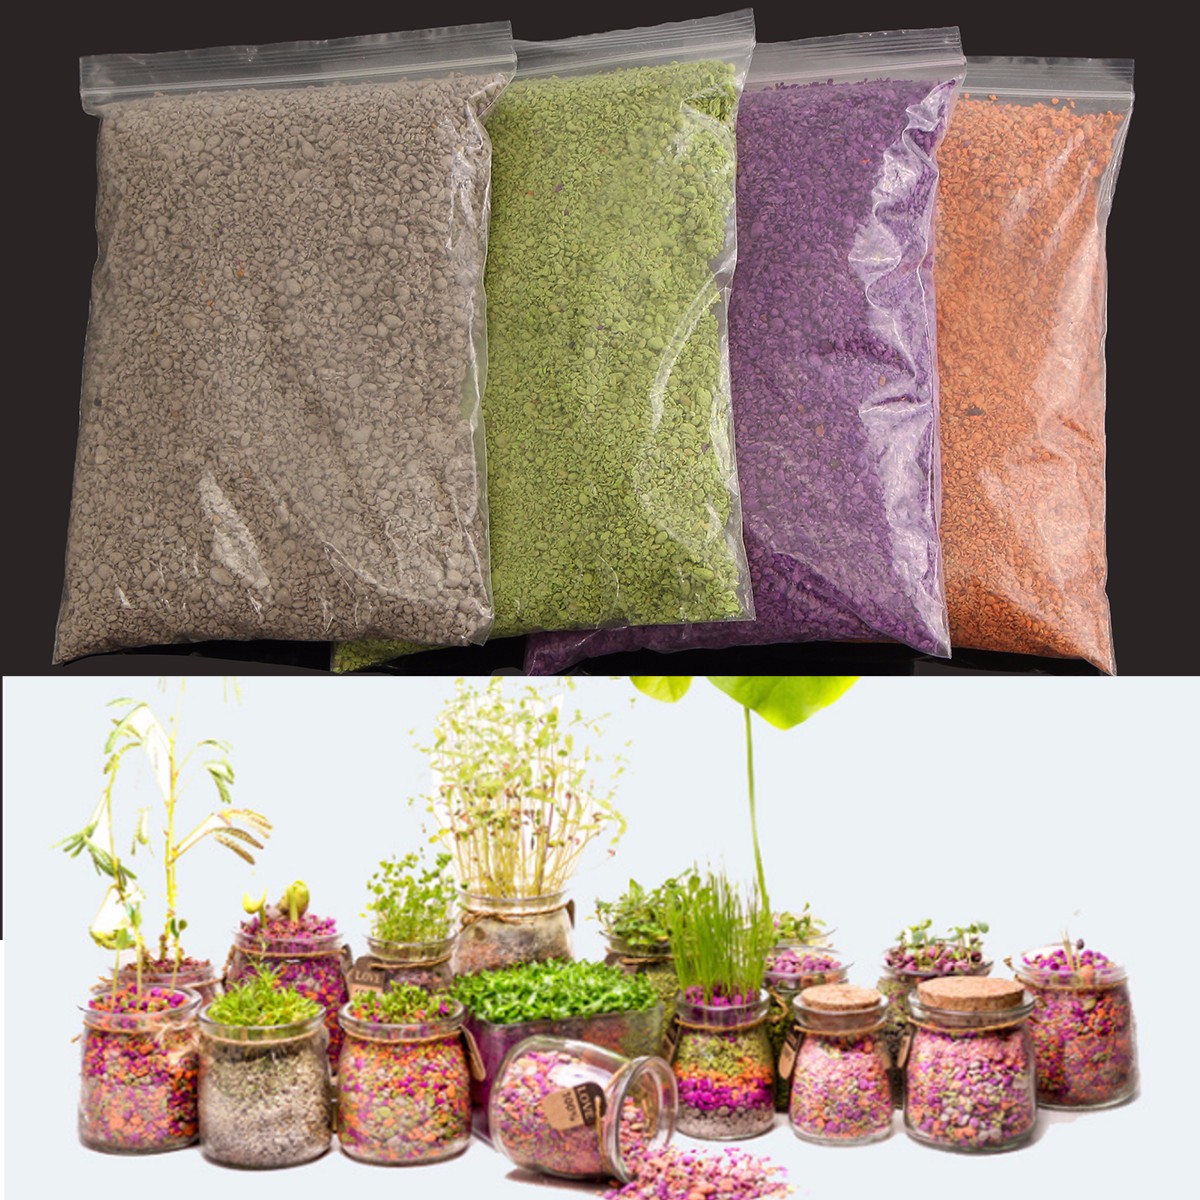 500ml-Plant-Flowers-Micro-landscape-Nutrient-Soil-Colorful-Potting-Paper-Soils-Garden-Decorations-1340136-1